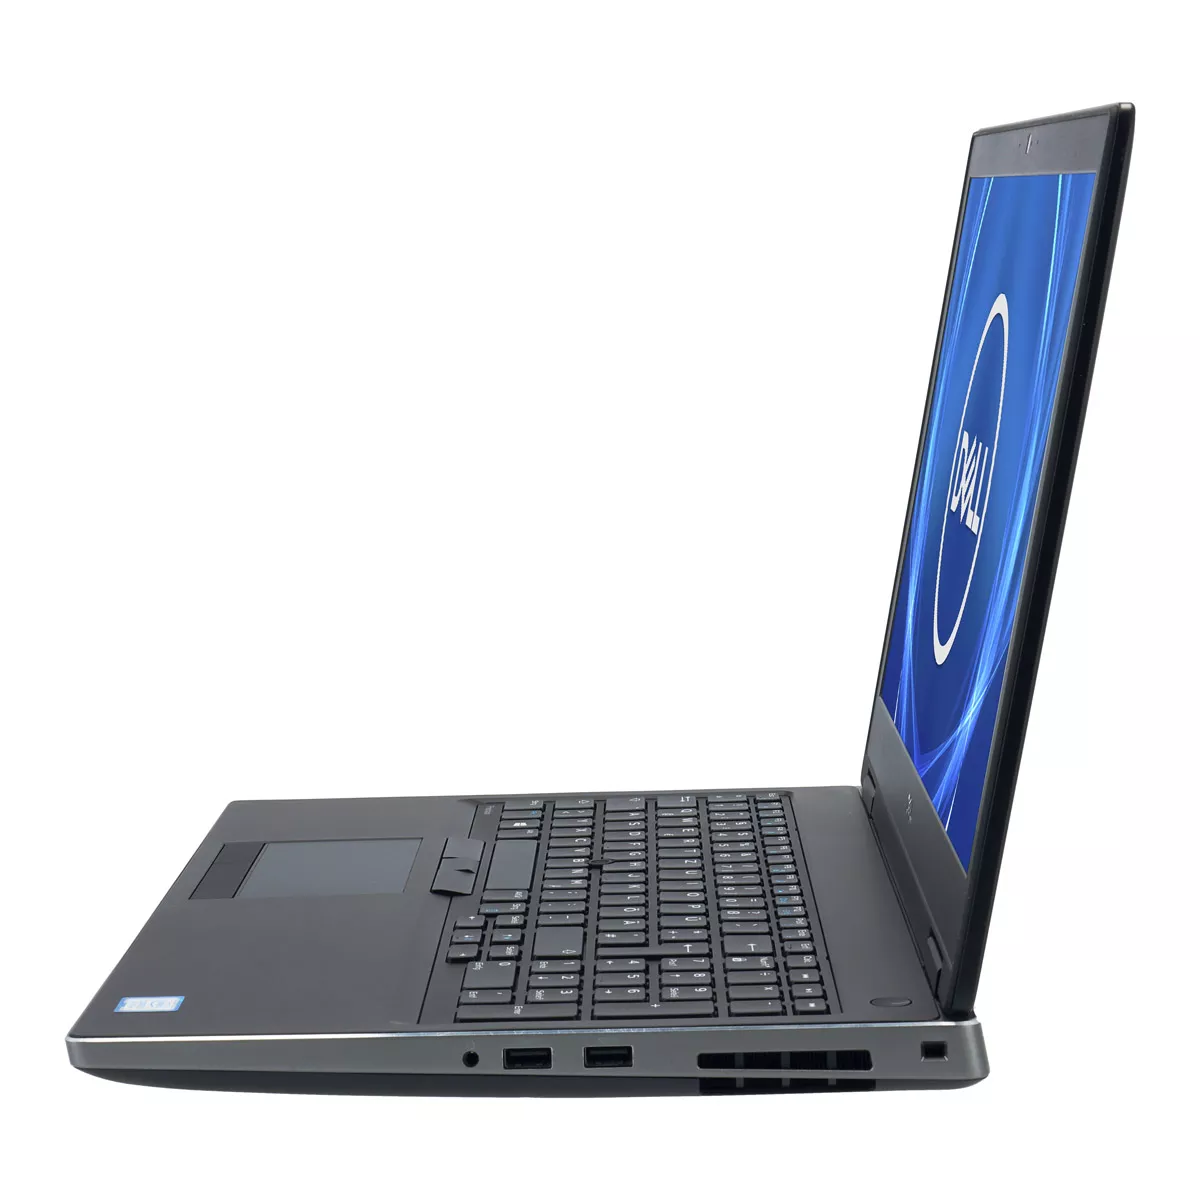 Dell Precision 7540 Core i9 9980HK nVidia Quadro T2000M 32 GB 240 GB M.2 nVME SSD Touch Webcam B